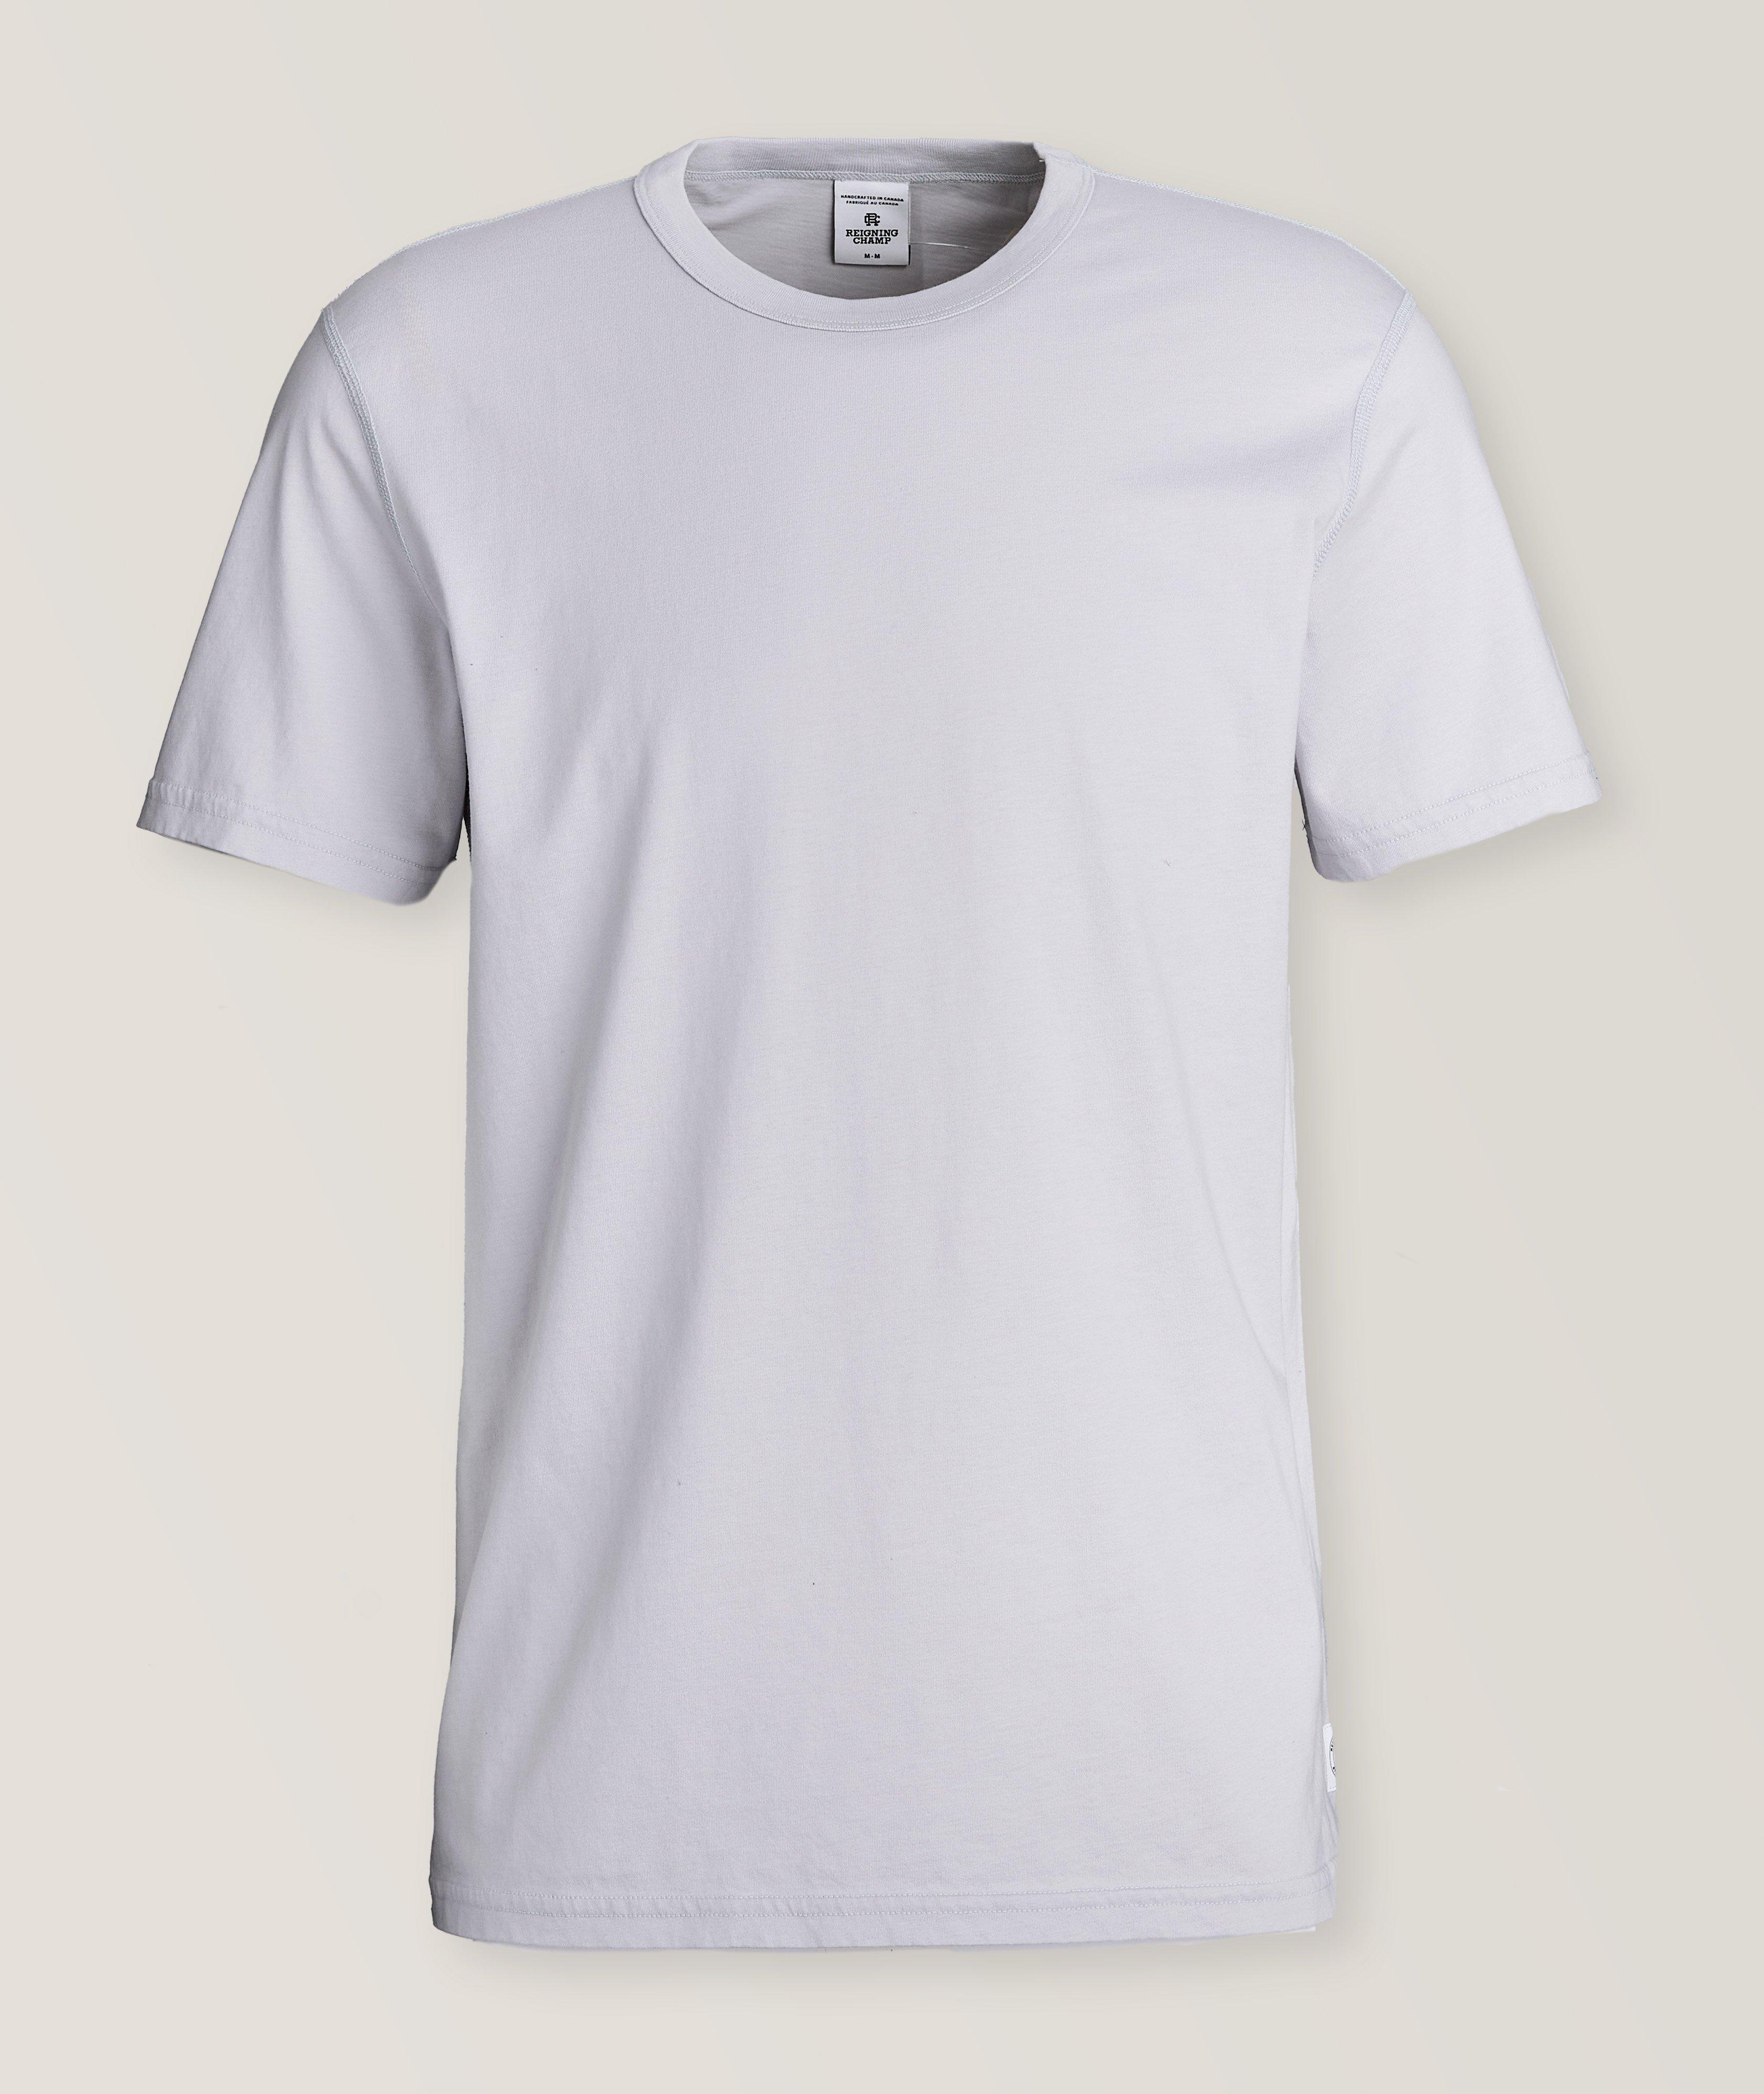 Lightweight Jersey Cotton T-Shirt image 0